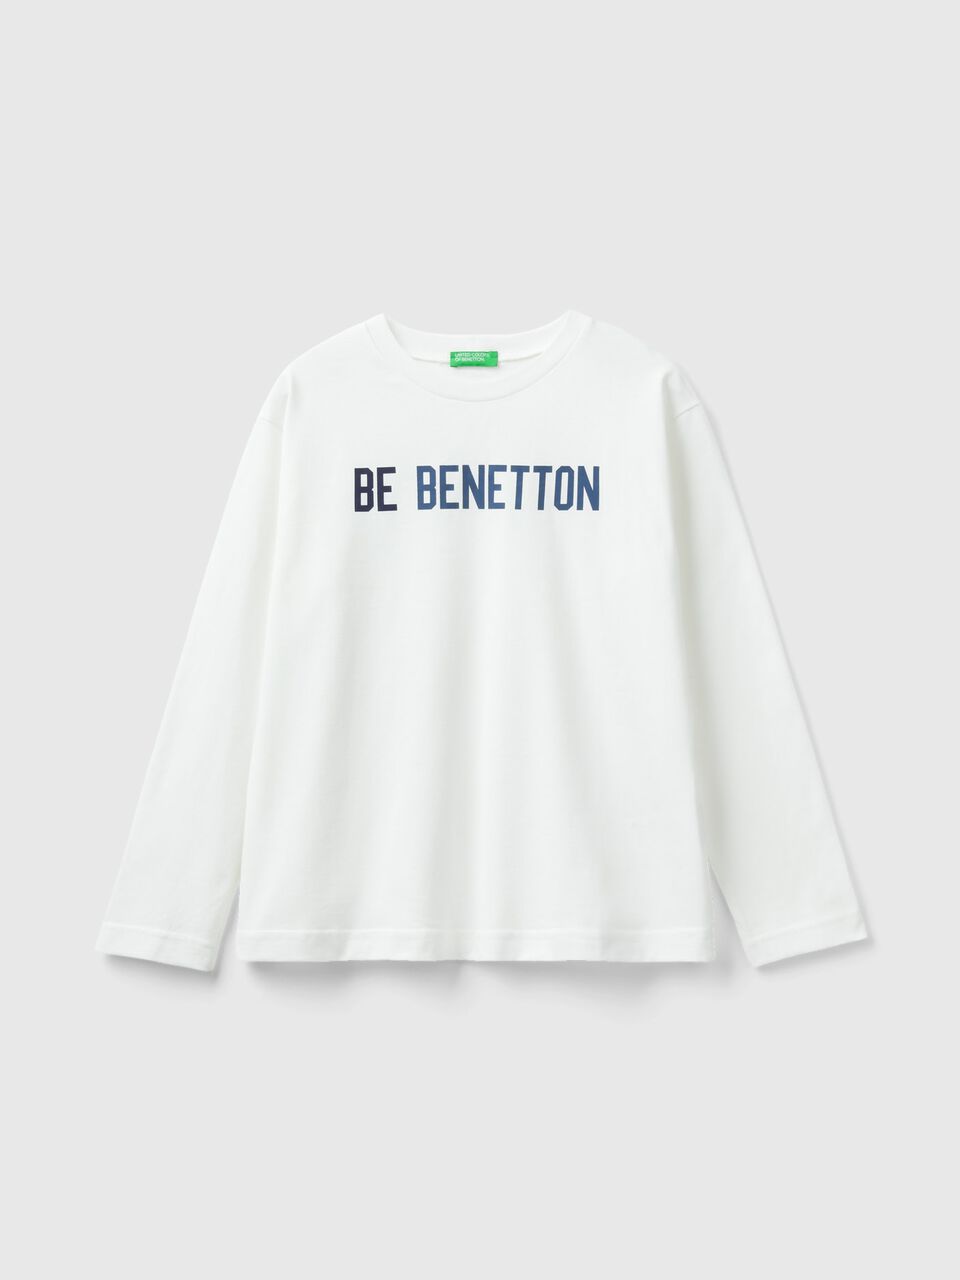 mit - Shirt | Benetton Logo-Print Weiss Warmes